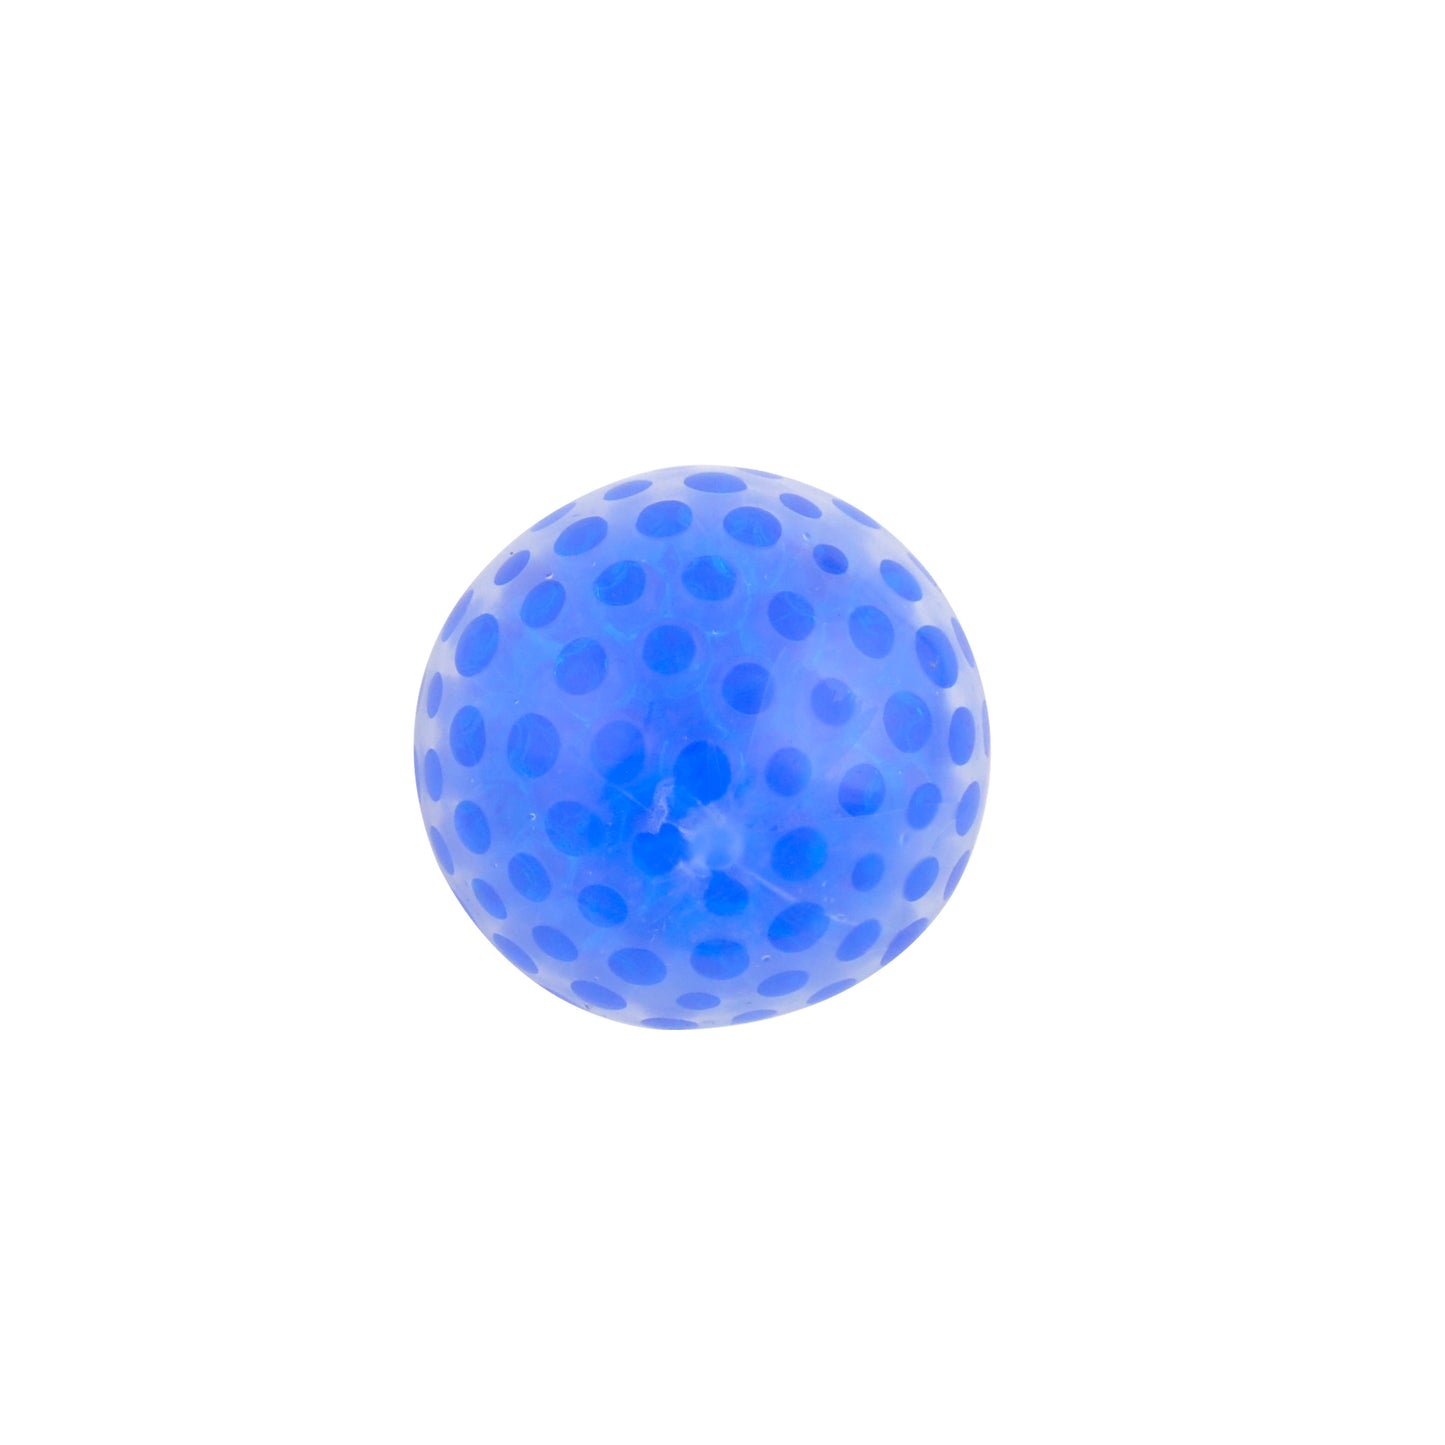 KaiserKids Water Bead Ball - BLUE